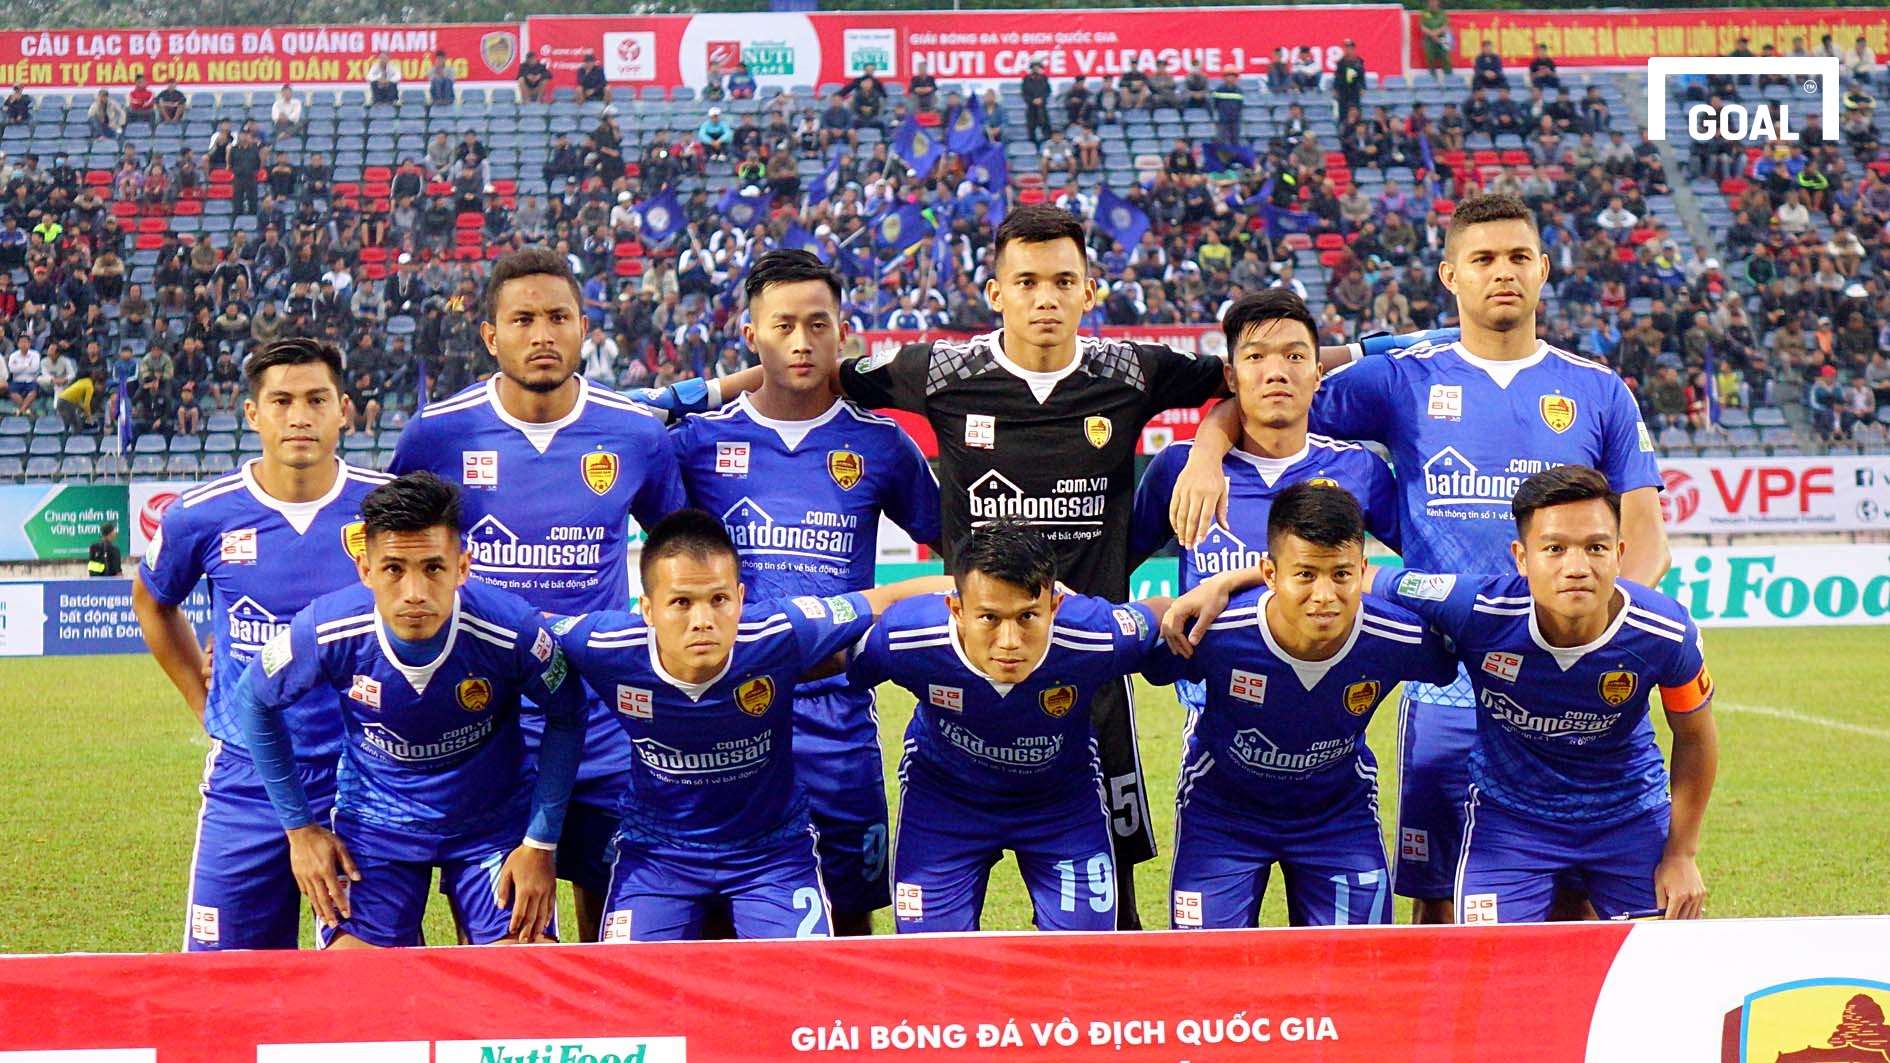 Quảng Nam Sài Gòn FC Vòng 1 V.League 2018